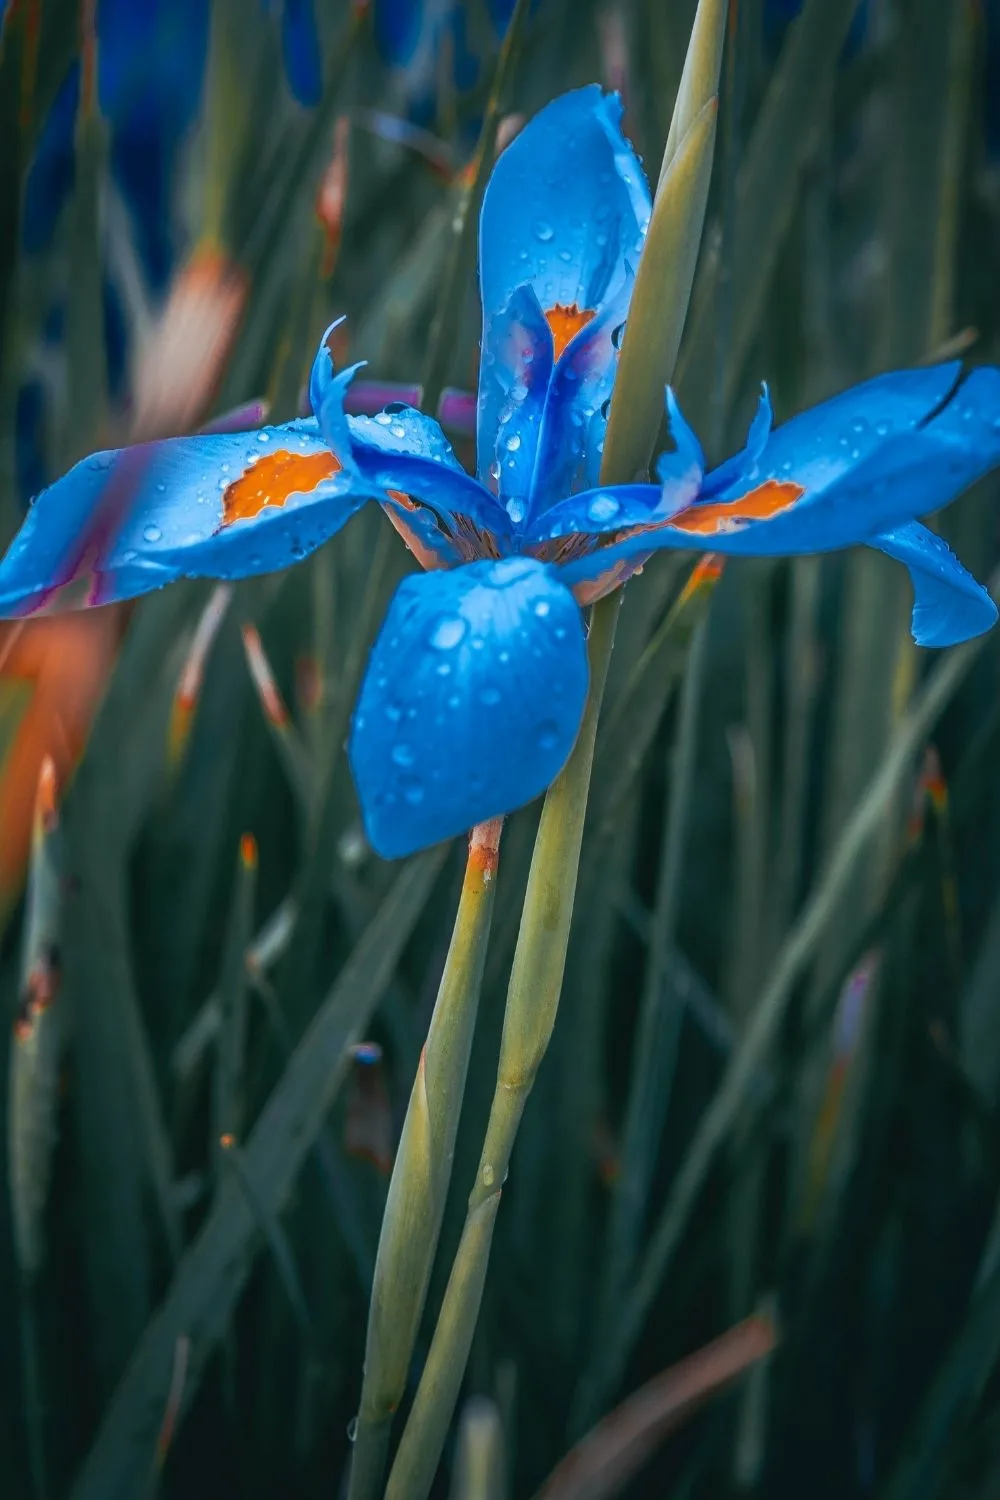 Stunning blue iris flower with orange accents